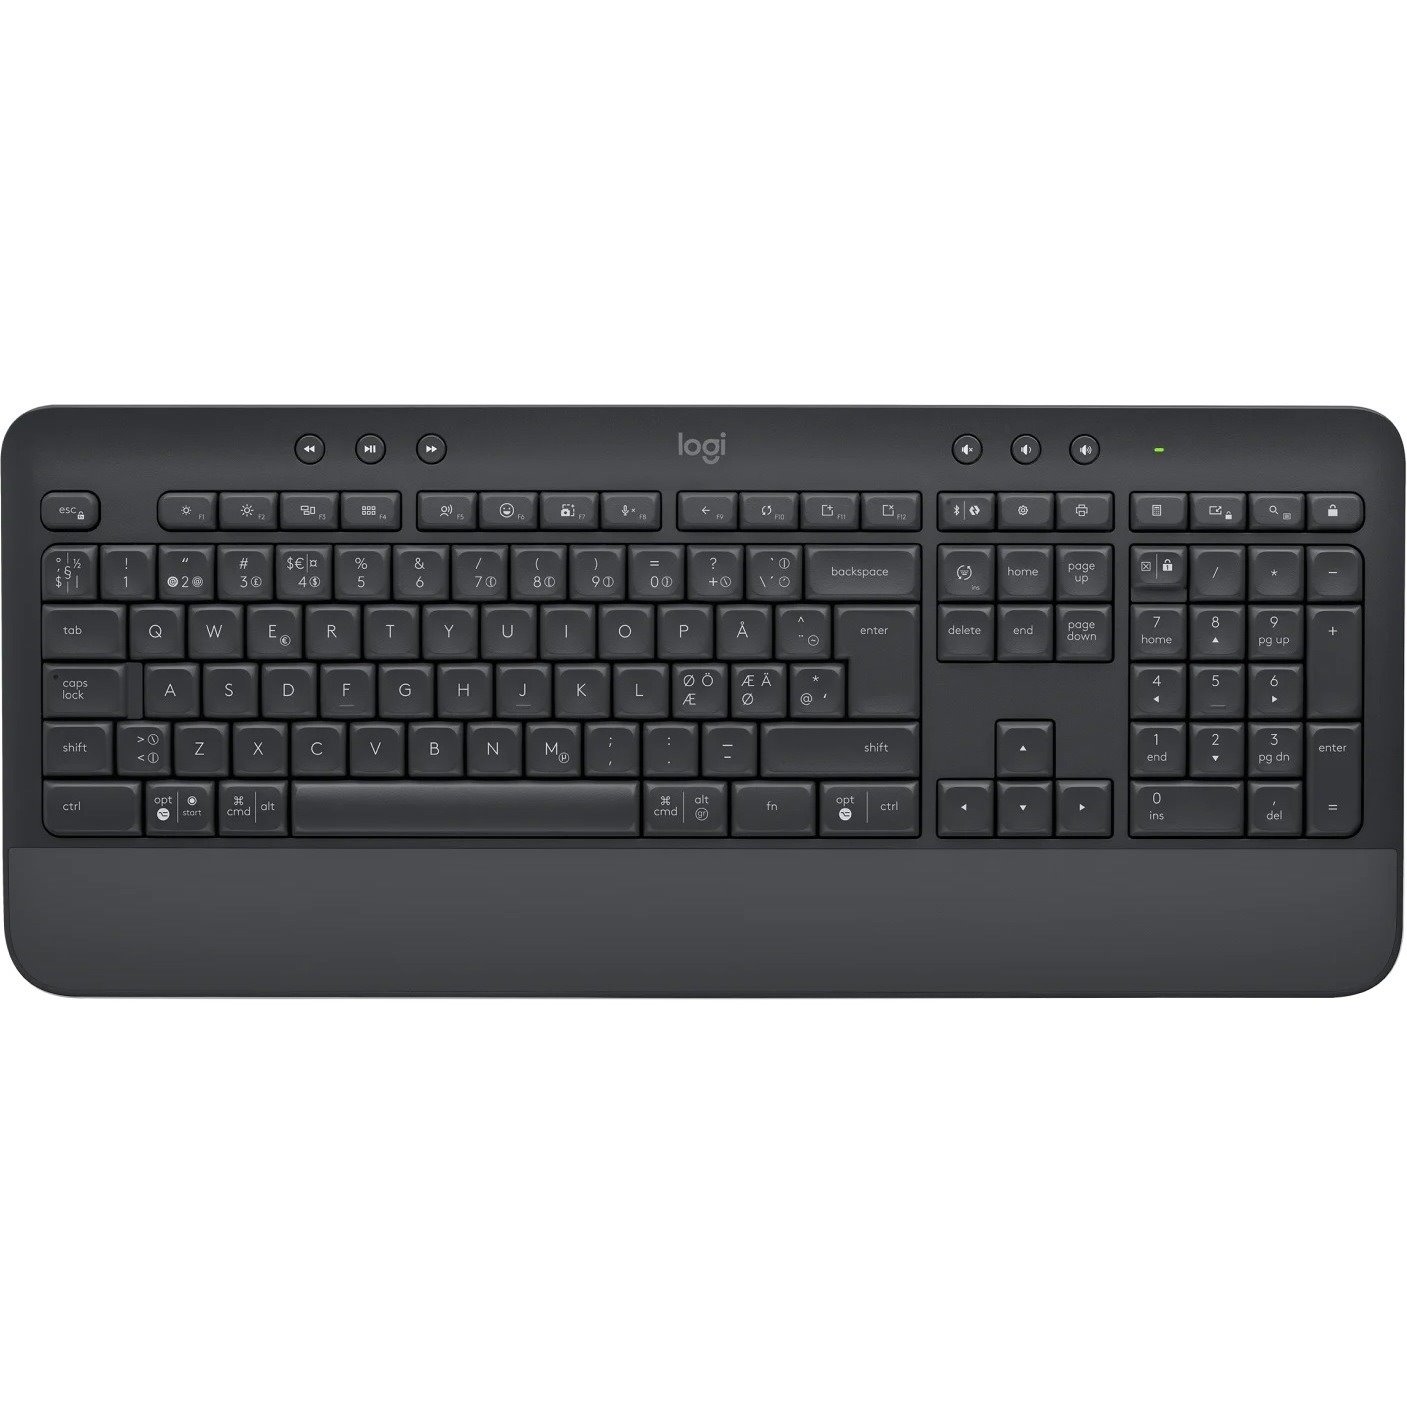 Logitech Signature K650 Keyboard - Wireless Connectivity - English - Graphite